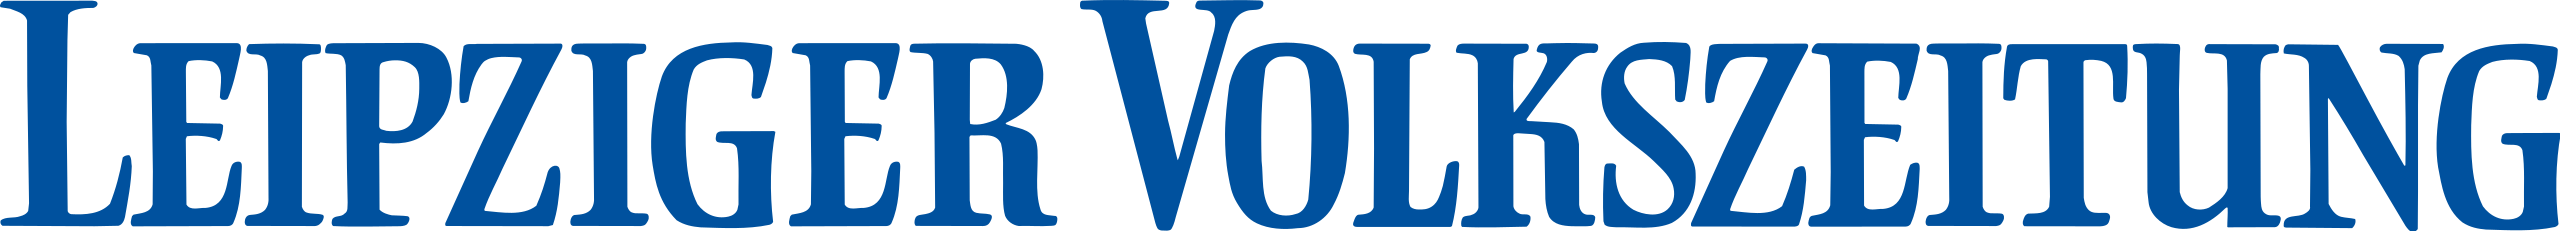 leipziger volkszeitung logo